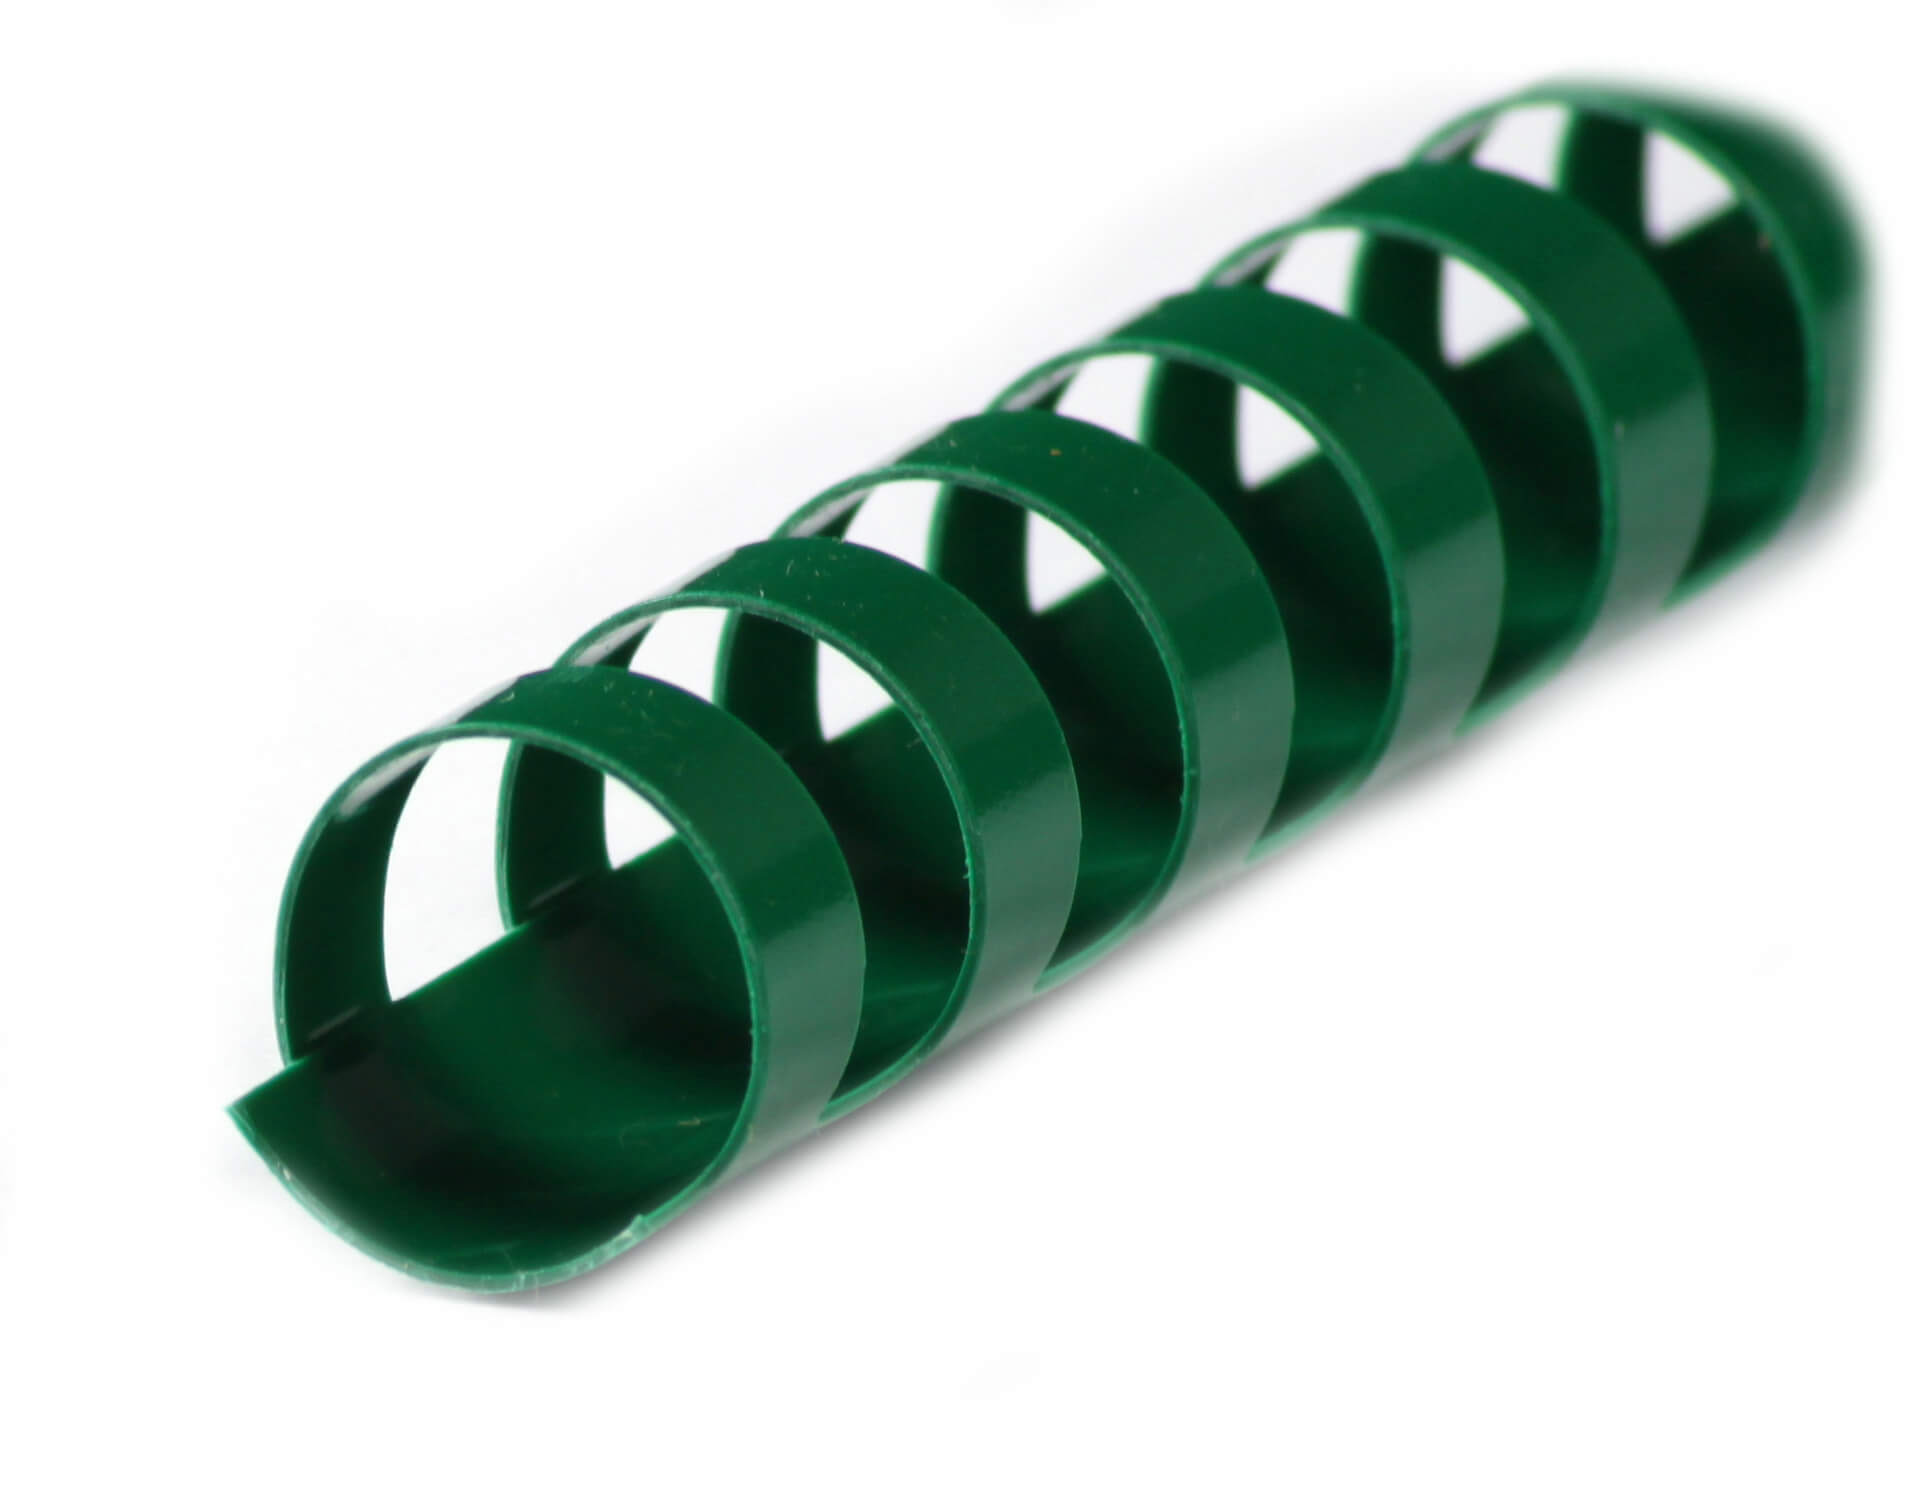 Plastikbinderücken DIN A4, 21 Ringe, 6mm Ø, in grün | Bestnr. BRP060-GR